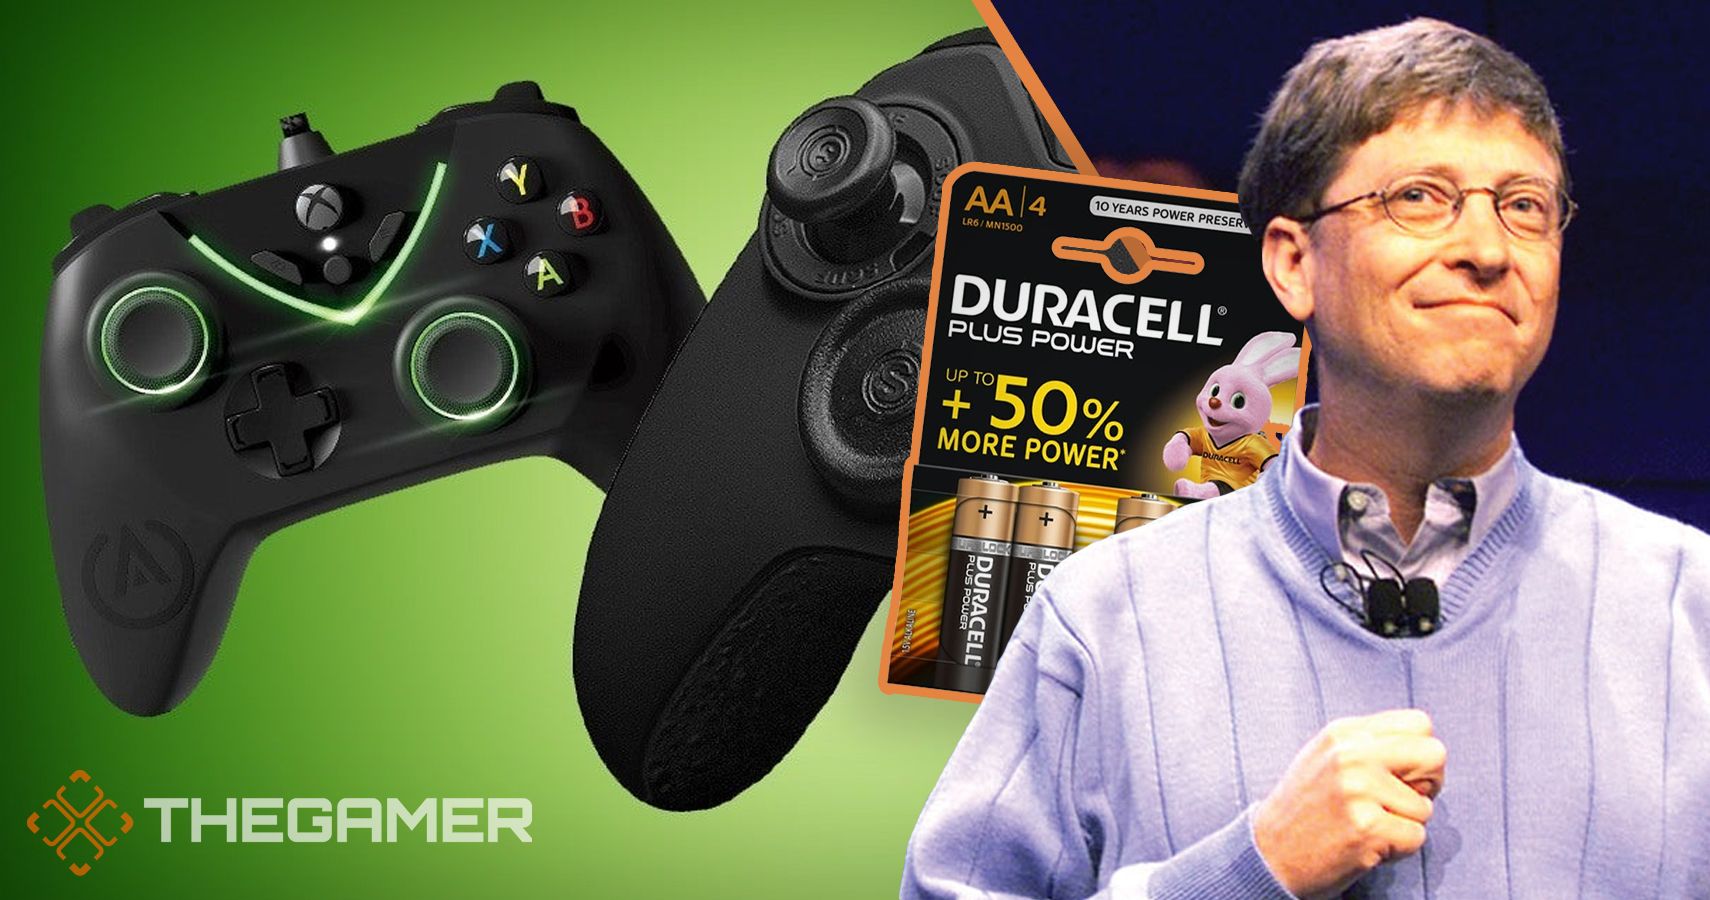 Eigenlijk Zie insecten Uitlijnen Reports Of Xbox Controllers Using Batteries Because Of Microsoft And  Duracell Deal Are False